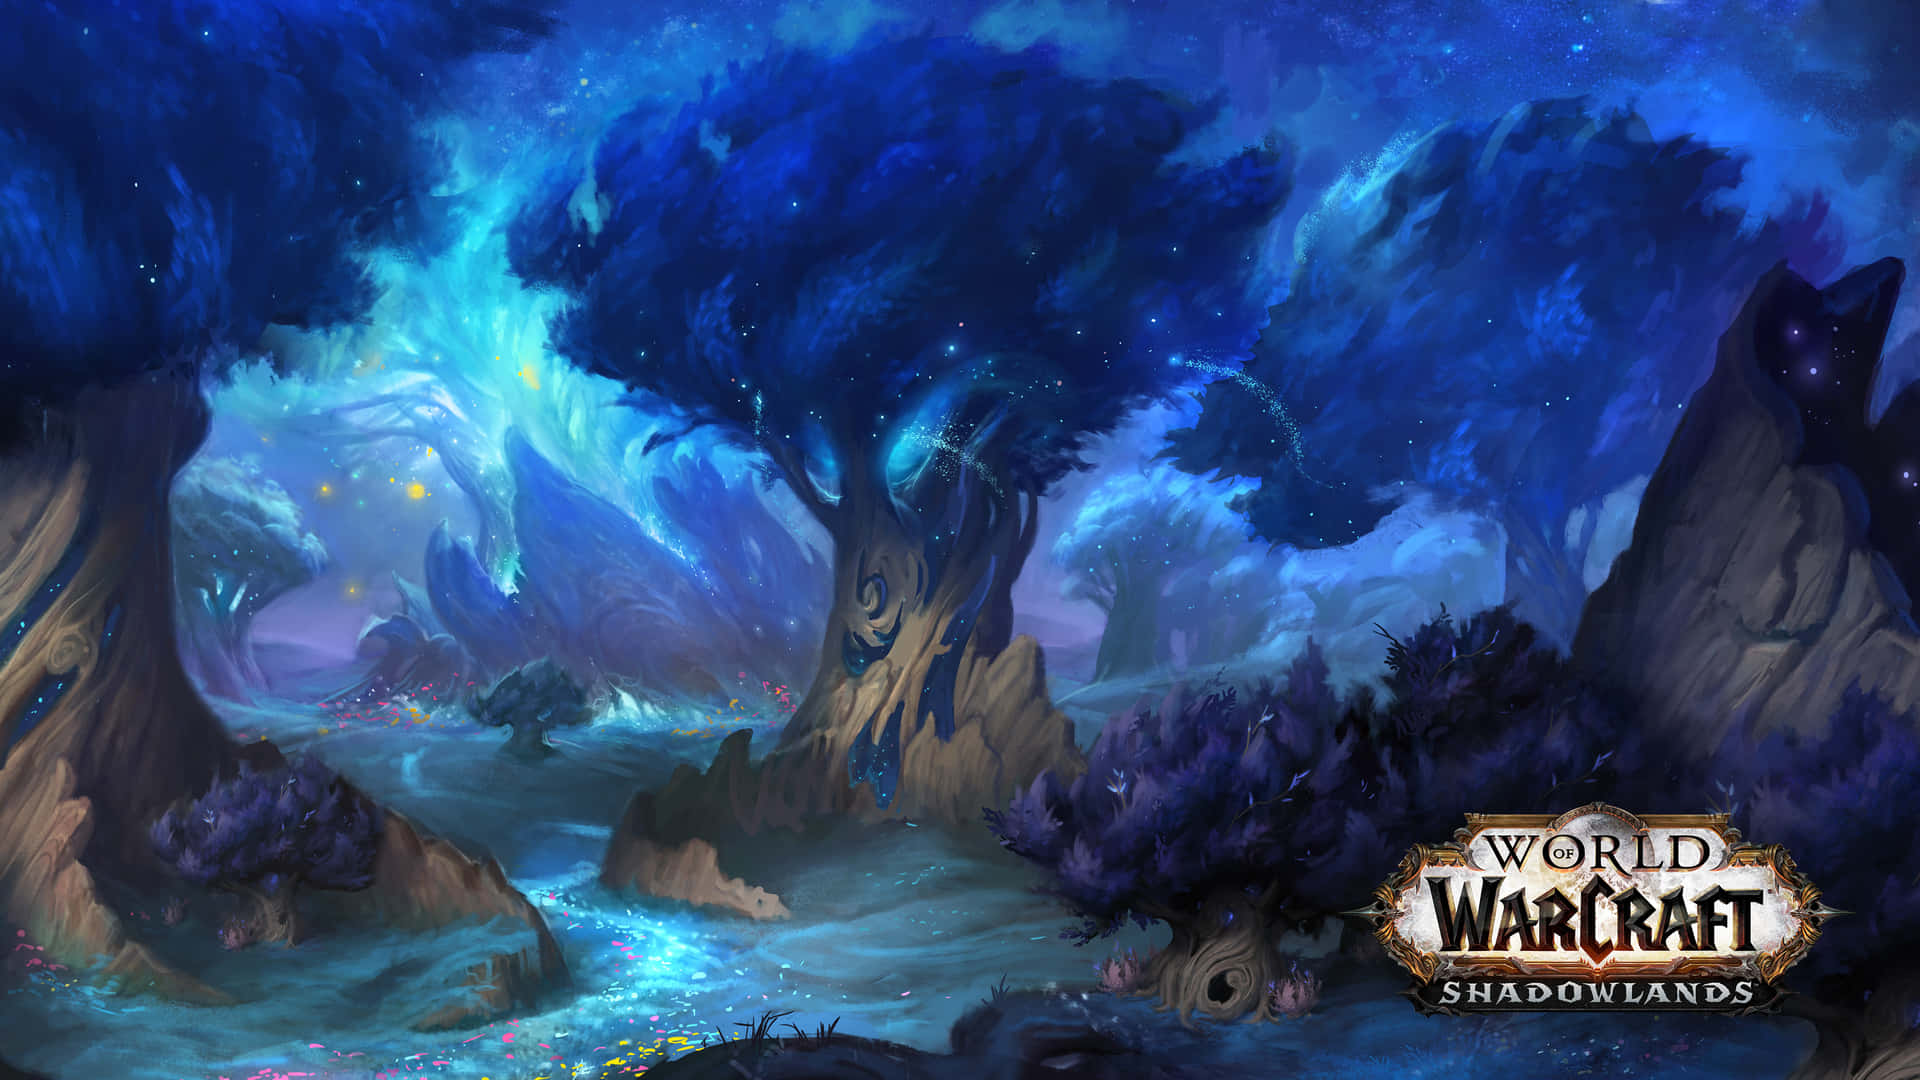 Papelde Parede De World Of Warcraft. Papel de Parede